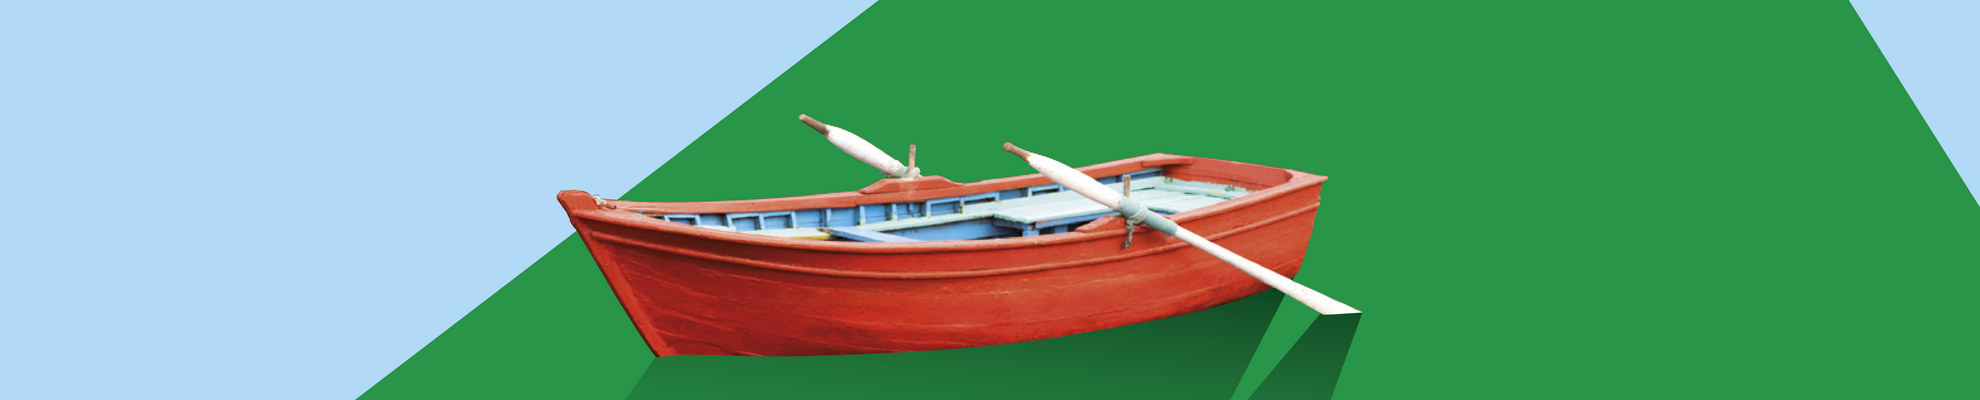 Bild rotes Ruderboot vor grün-blauem Hintergrund